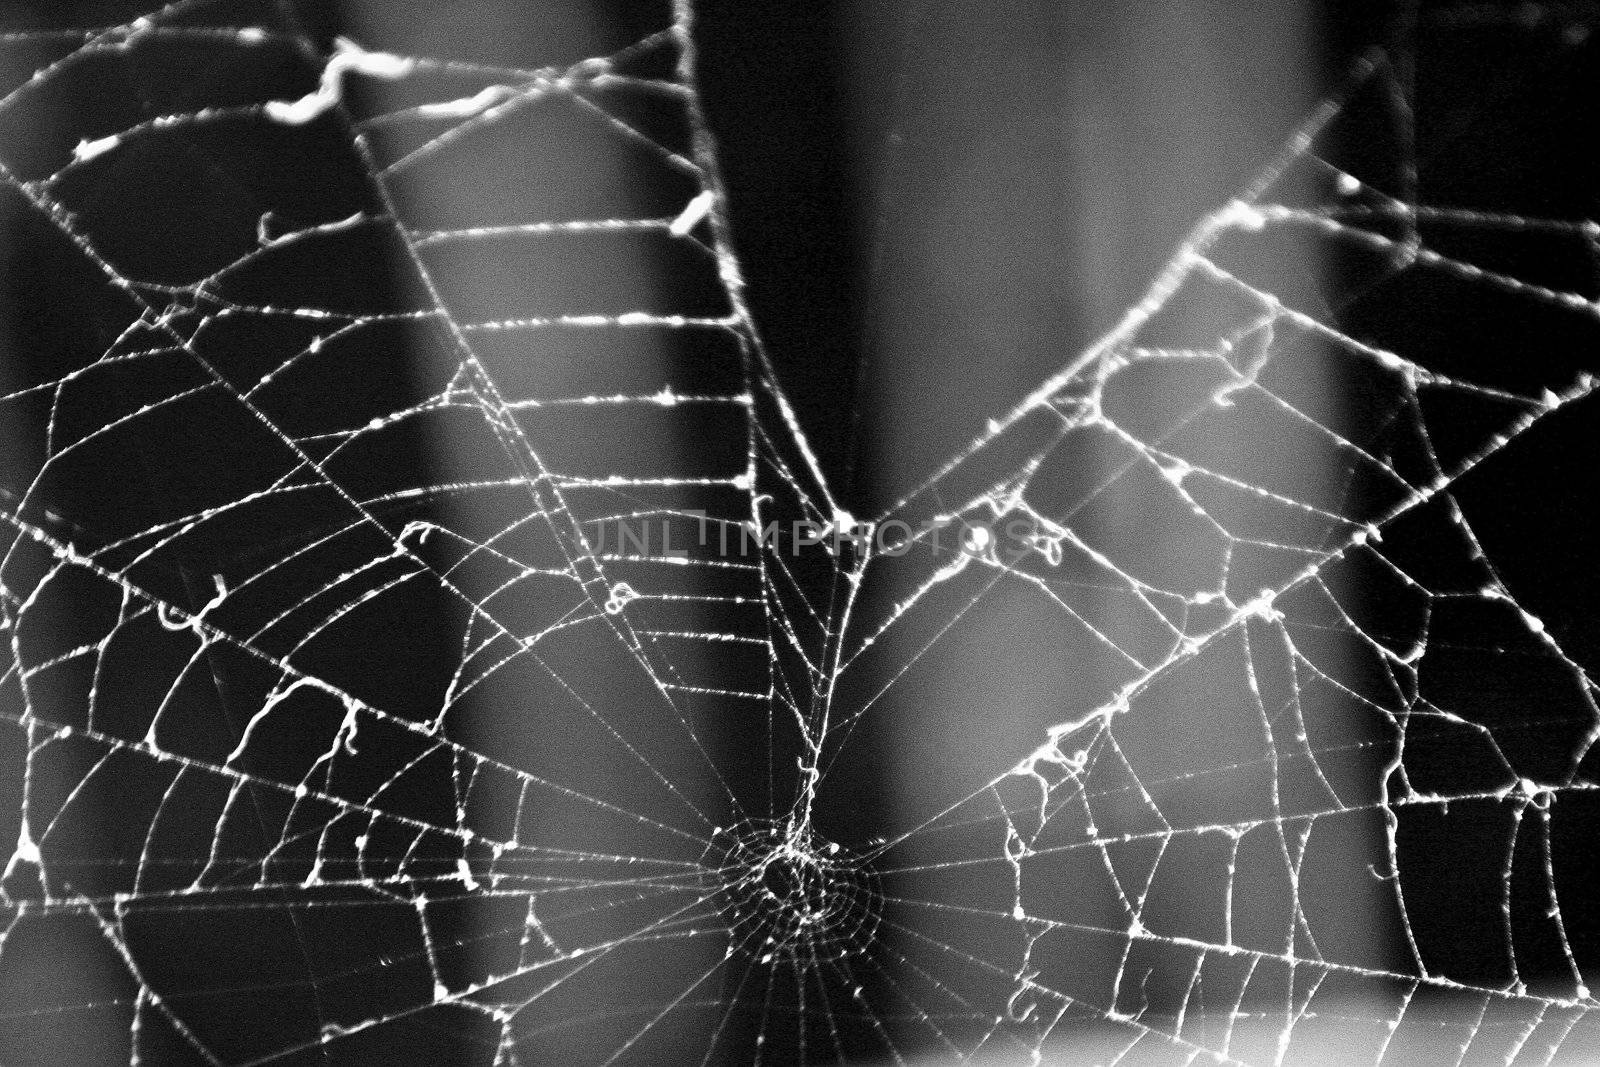 Spider Web by tilvo